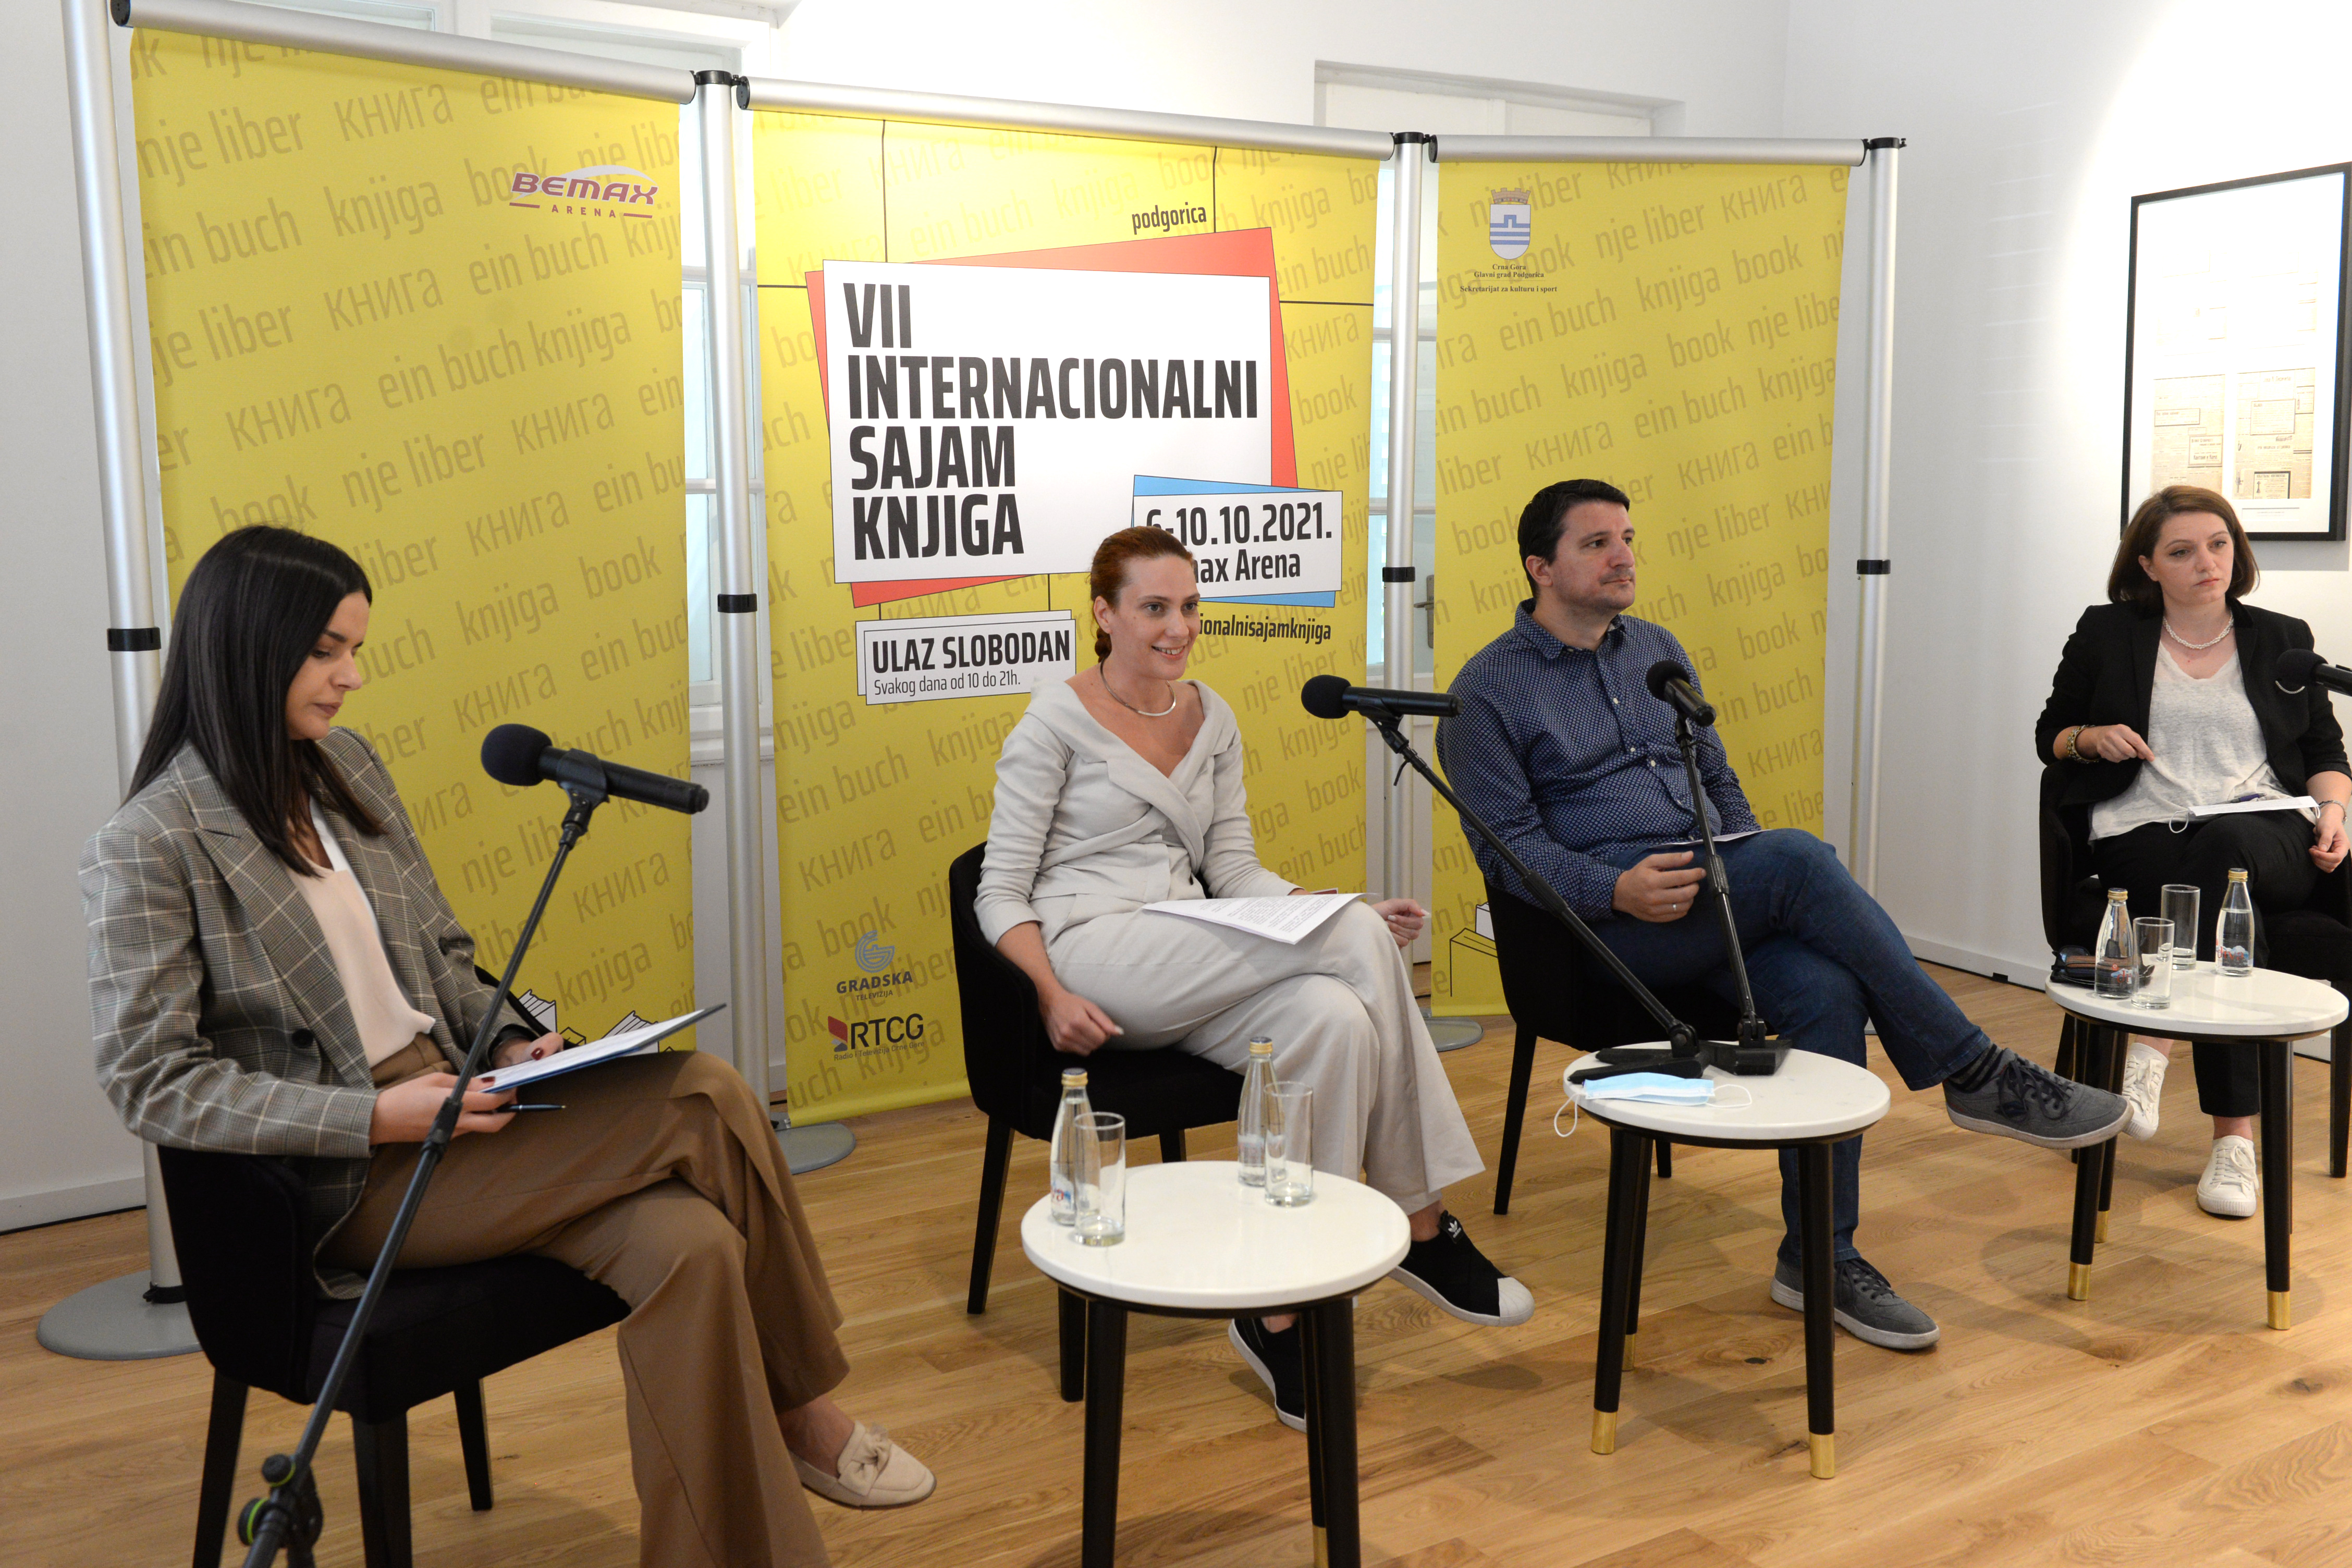 Mihael Martens otvara VII internacionalni sajam knjiga u Podgorici